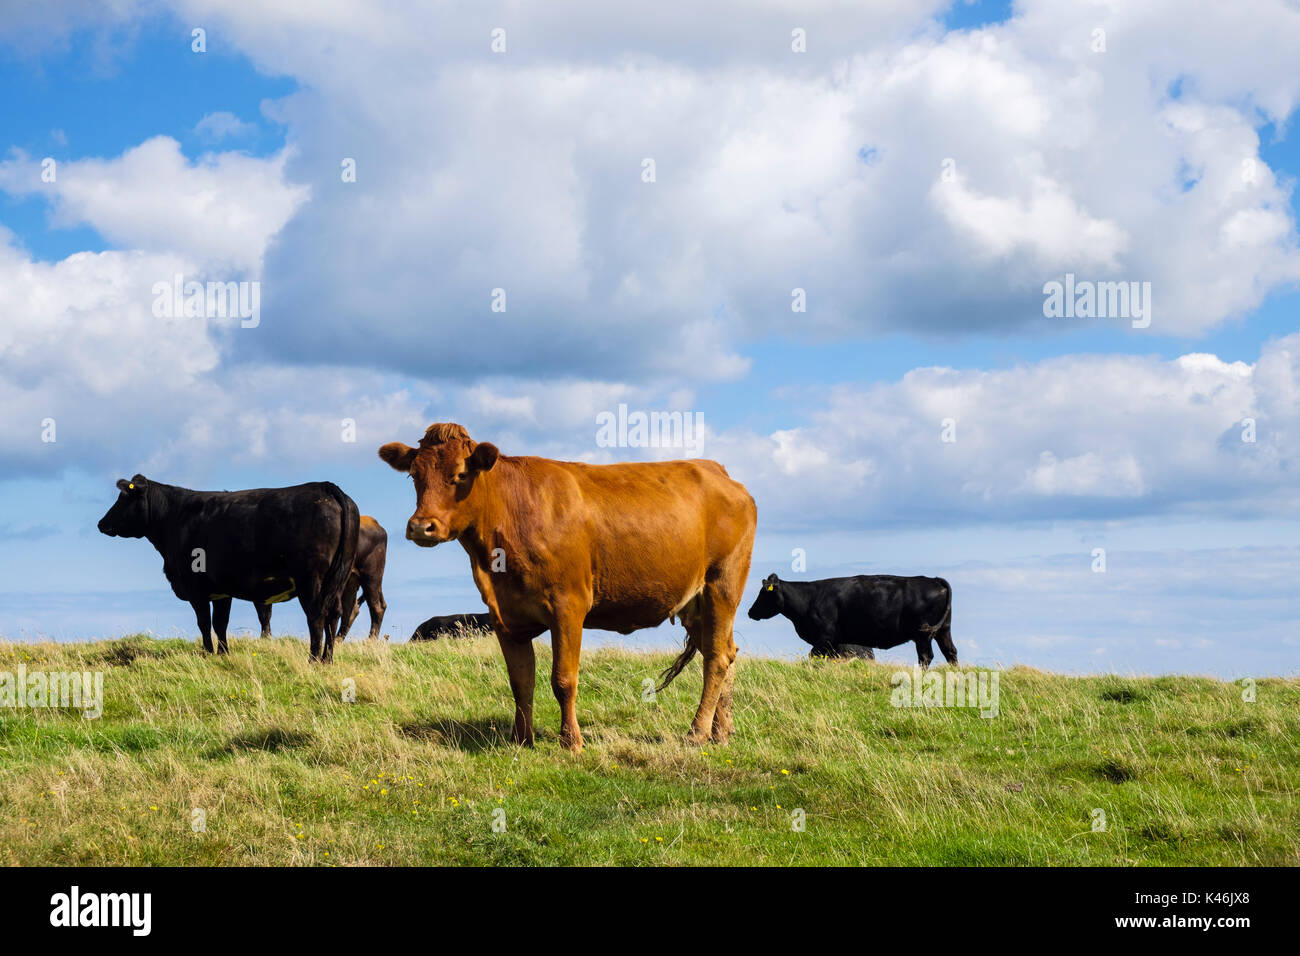 Troupeau de noir et brun des vaches dans un champ à la fin de l'été. Ile d'Anglesey, au Pays de Galles, Royaume-Uni, Angleterre Banque D'Images